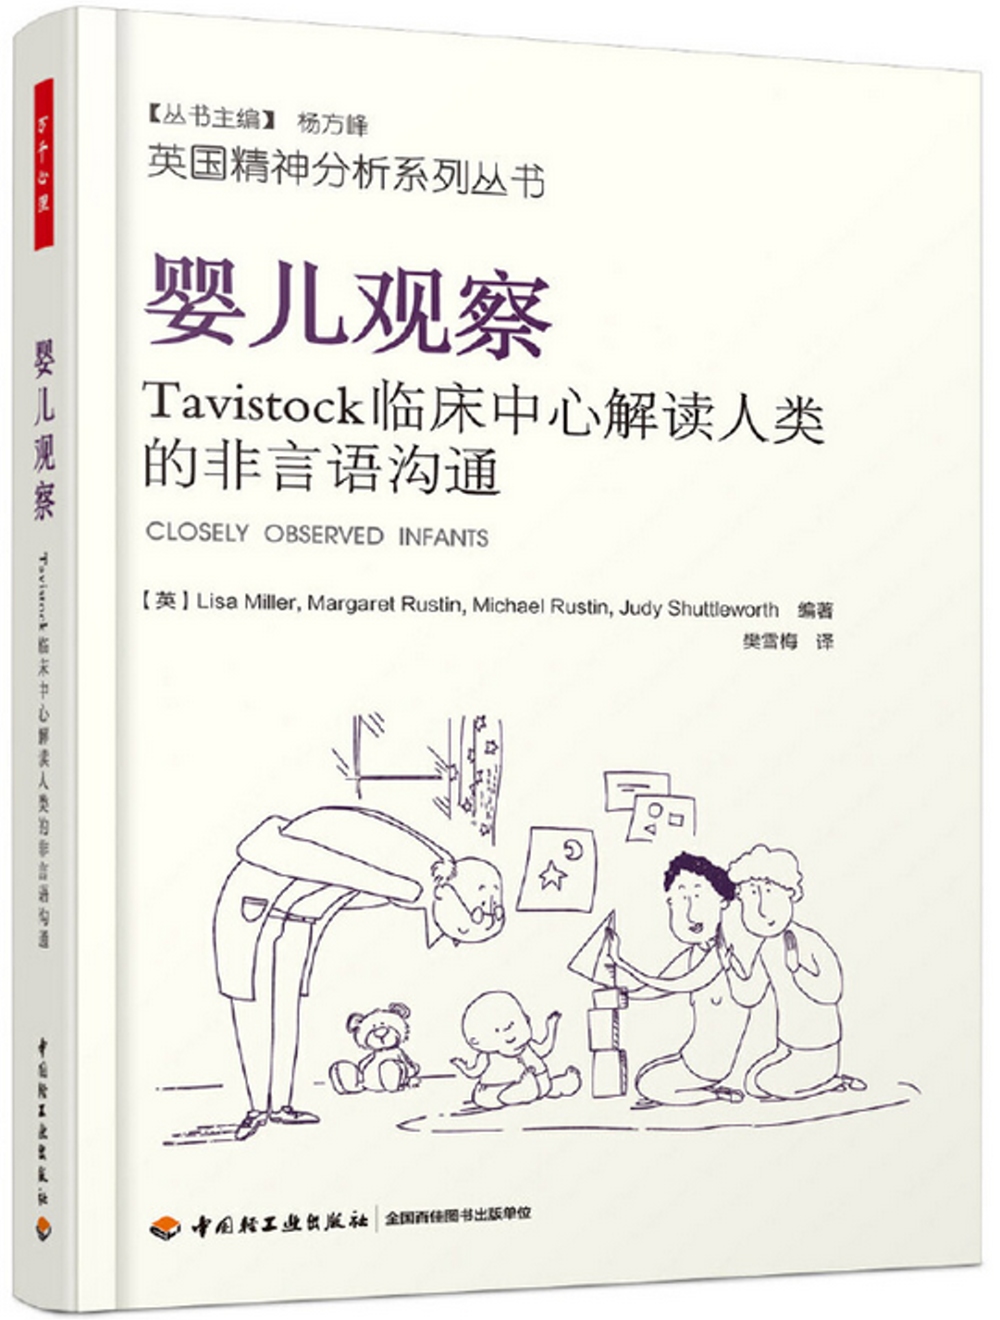 嬰兒觀察：Tavistock臨床中心解讀人類的非語言溝通